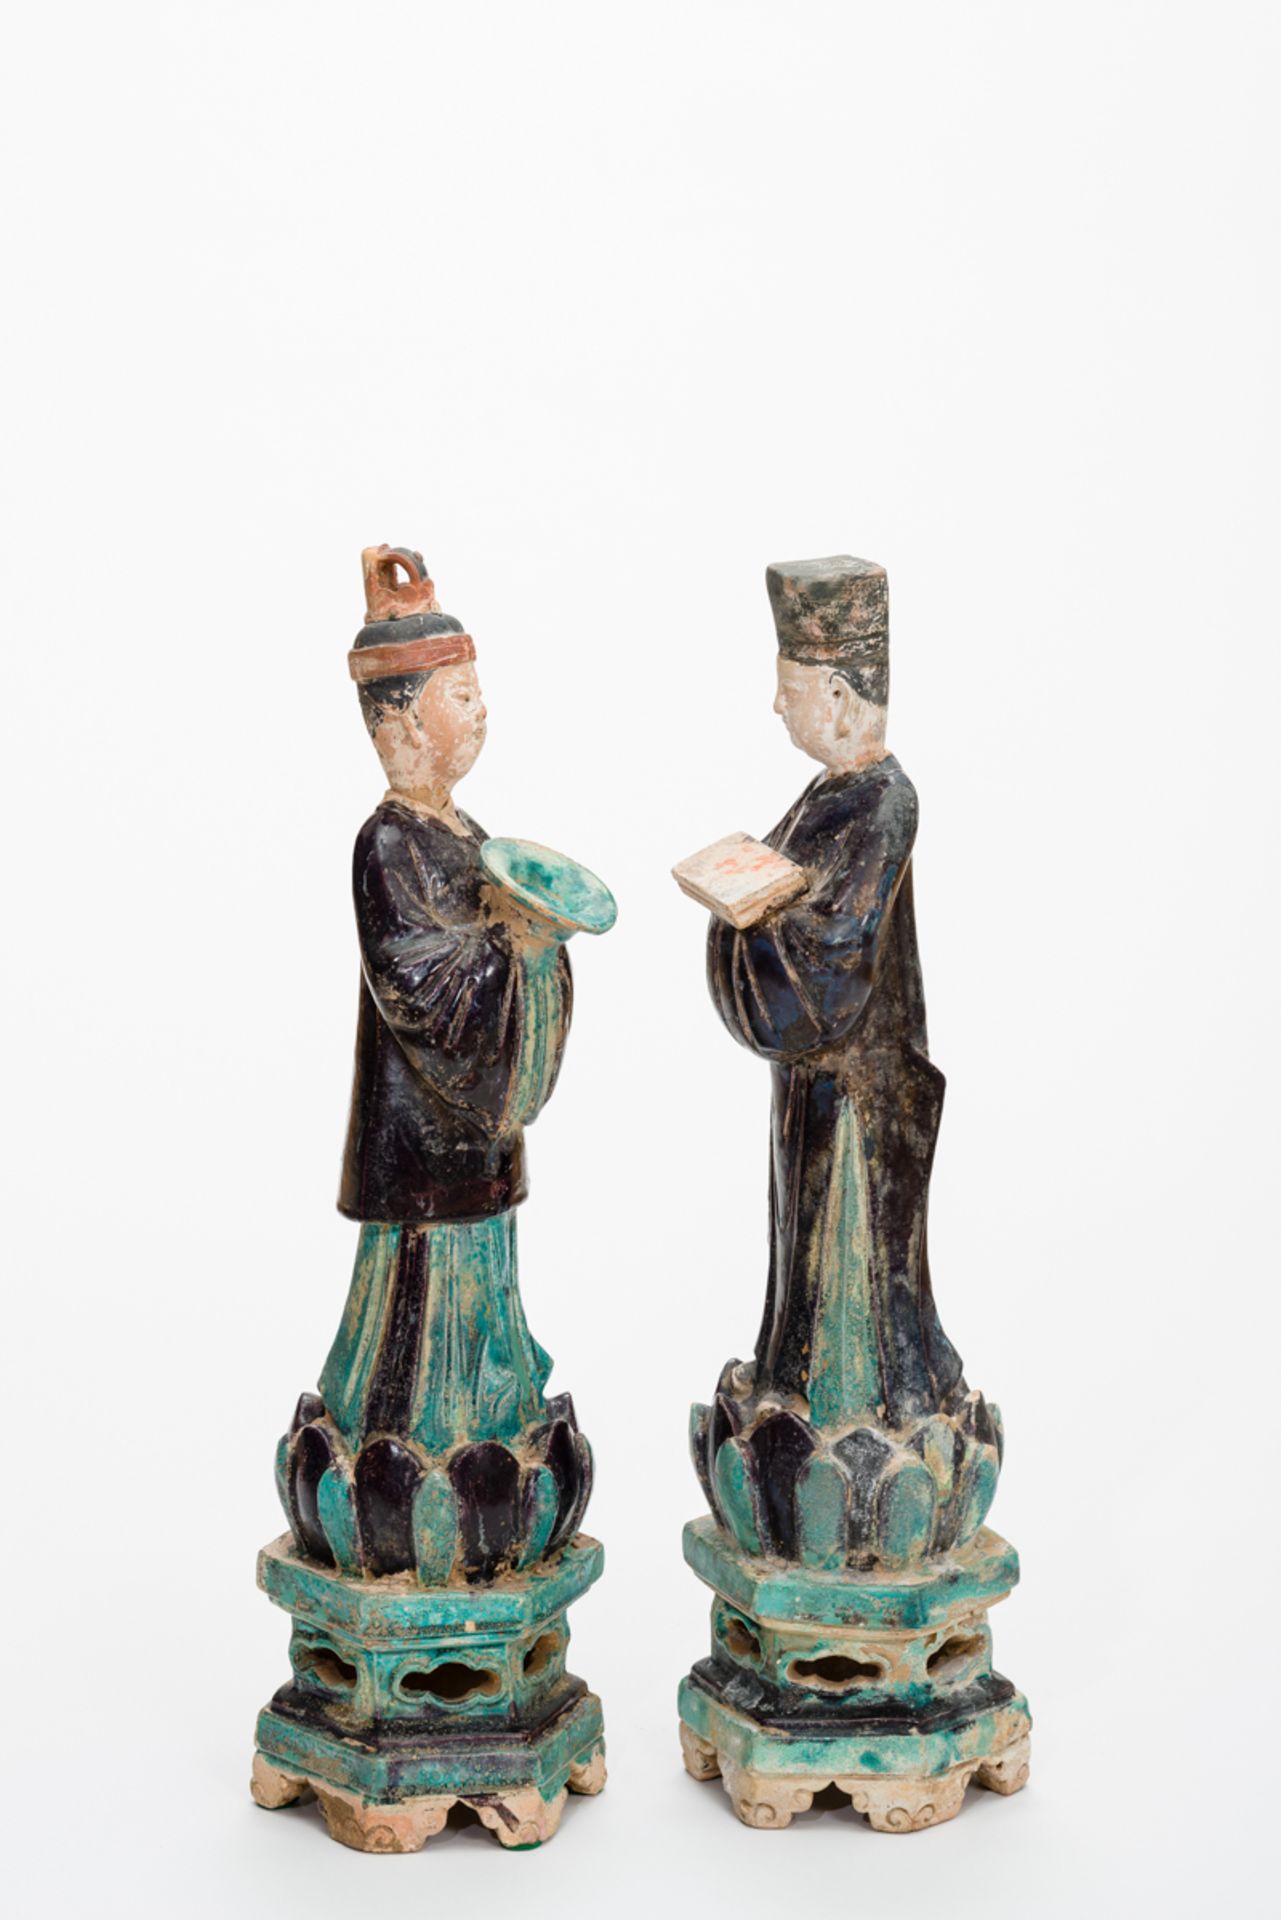 DAME UND HERR AUS EINEM GROSSEN GEFOLGETürkis und schwarz glasierte Keramik. China, Ming-Dynastie, - Image 4 of 5